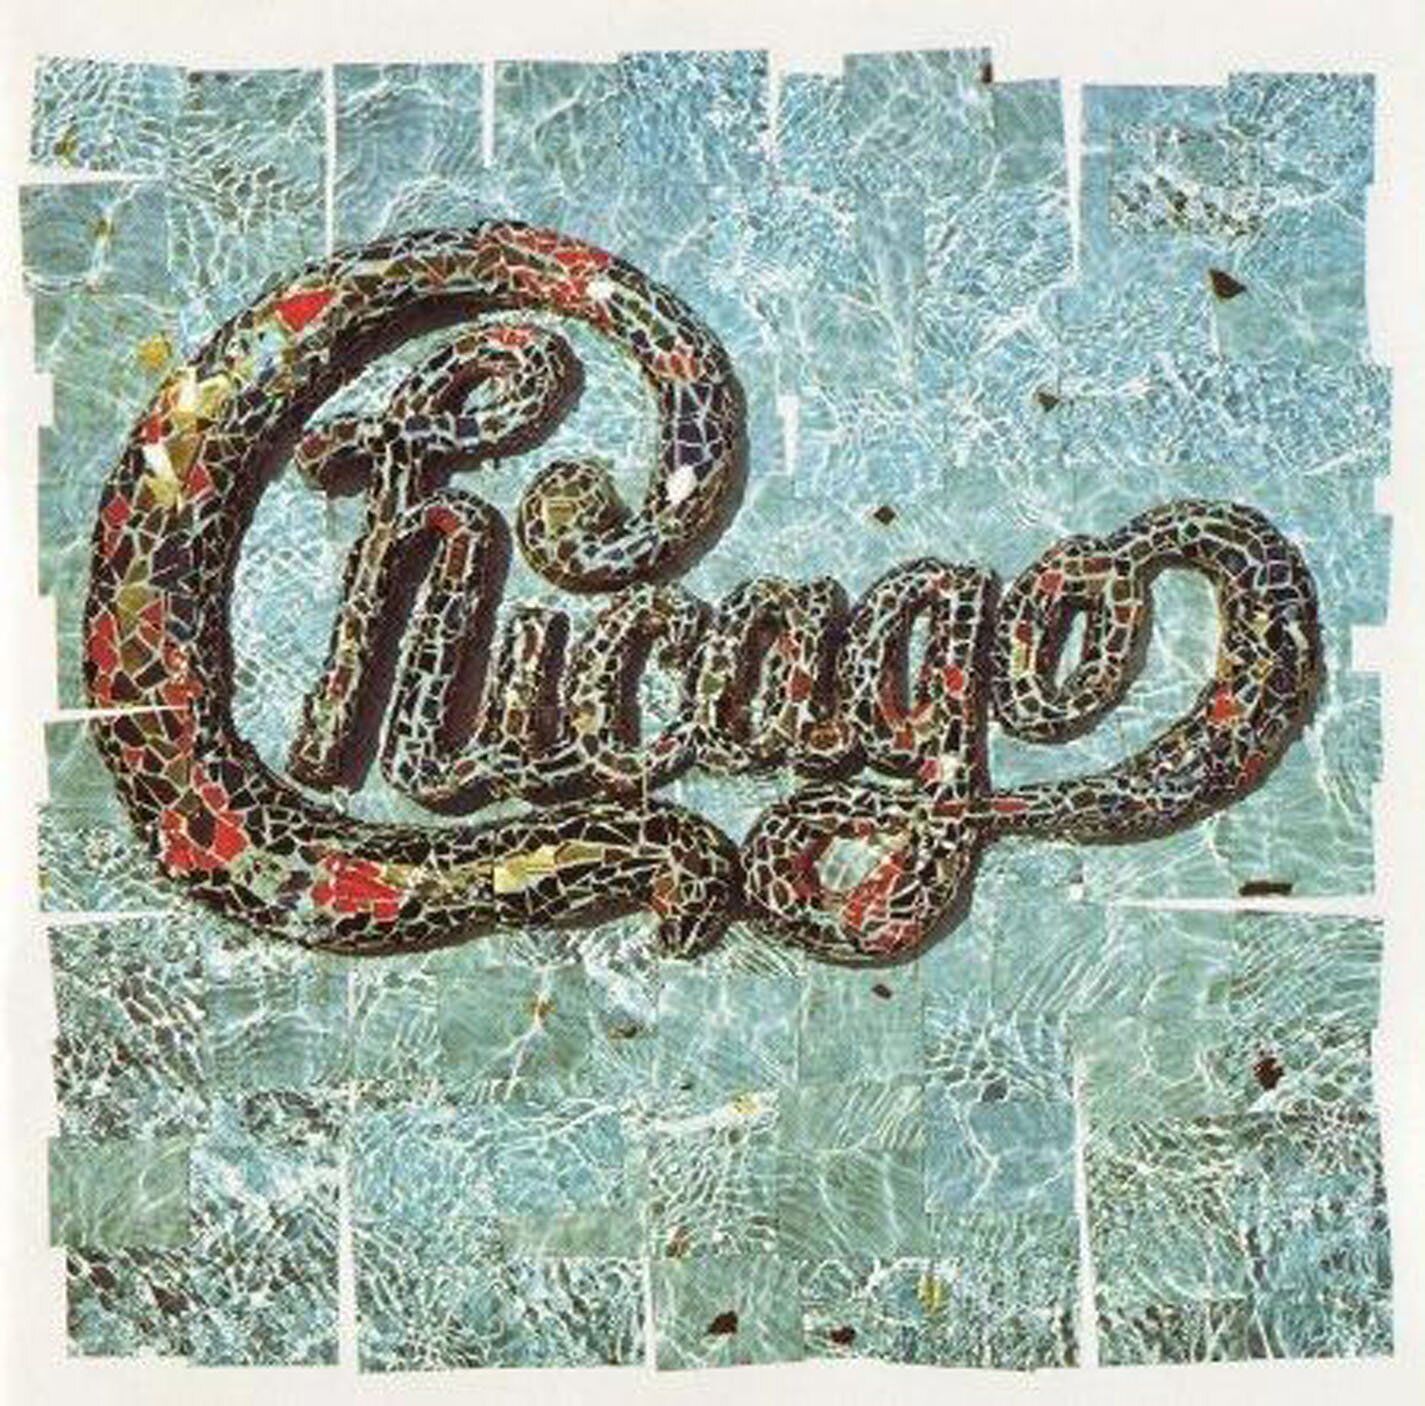 Chicago 18 (CD)